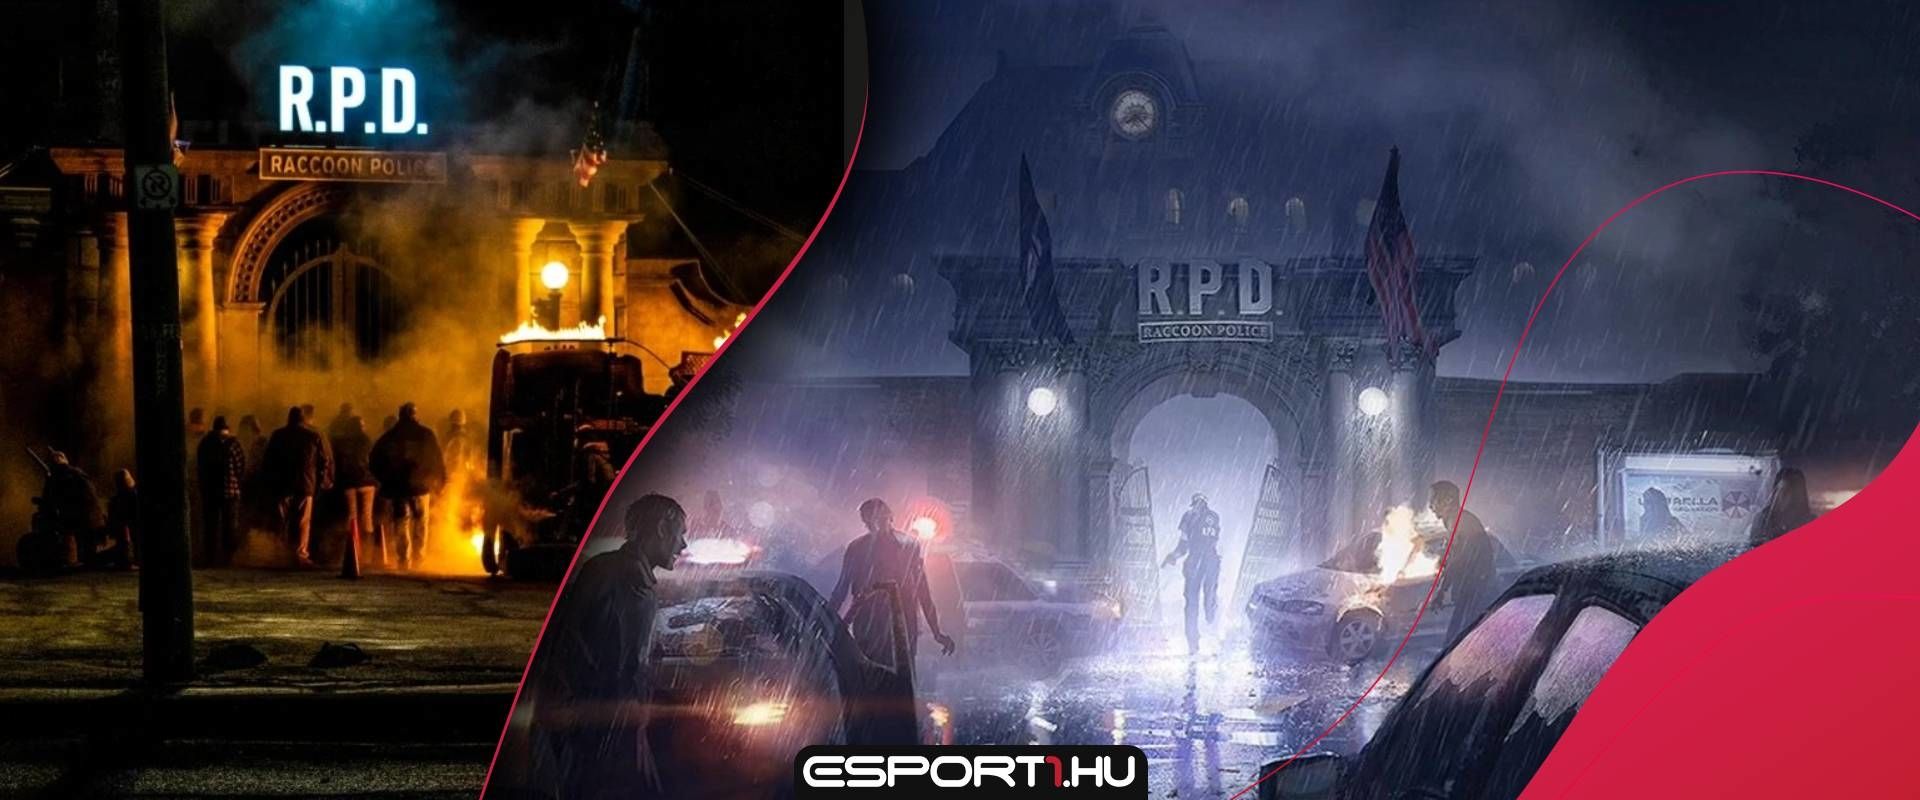 Az eddigi képek alapján az új Resident Evil film szorosan követi majd a játékokat